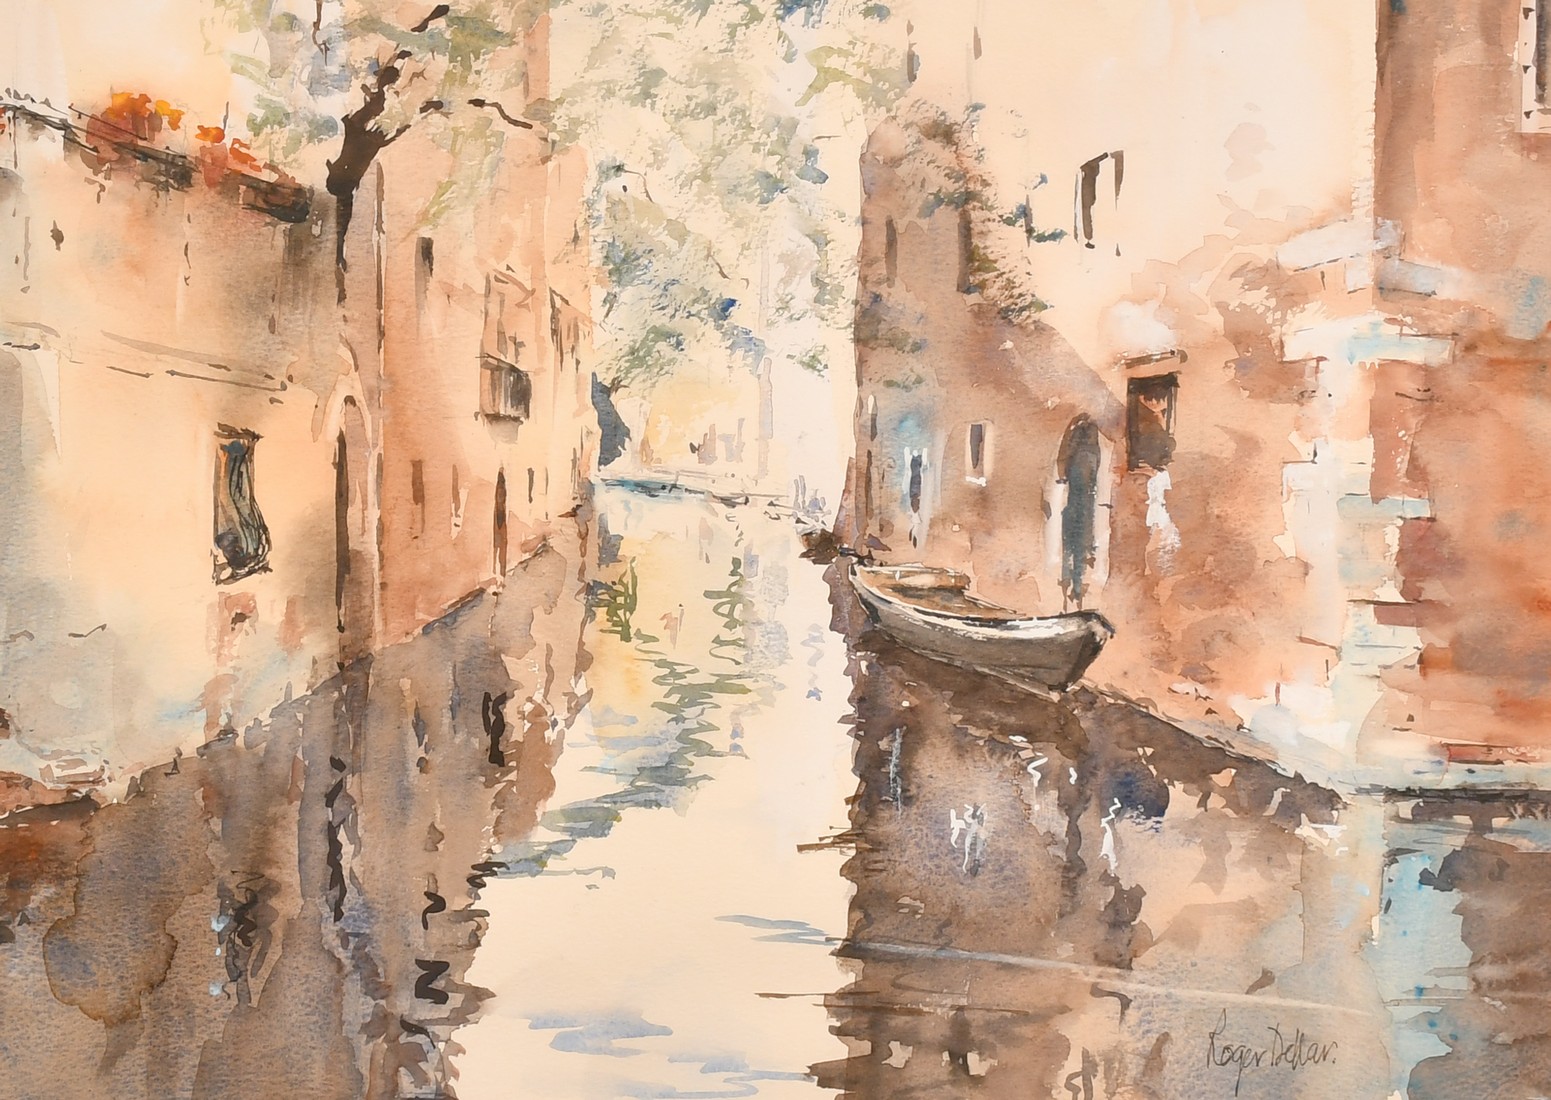 Roger Dellar, a canal scene, watercolour, signed, 13" x 17.5" (33 x 44.5cm).